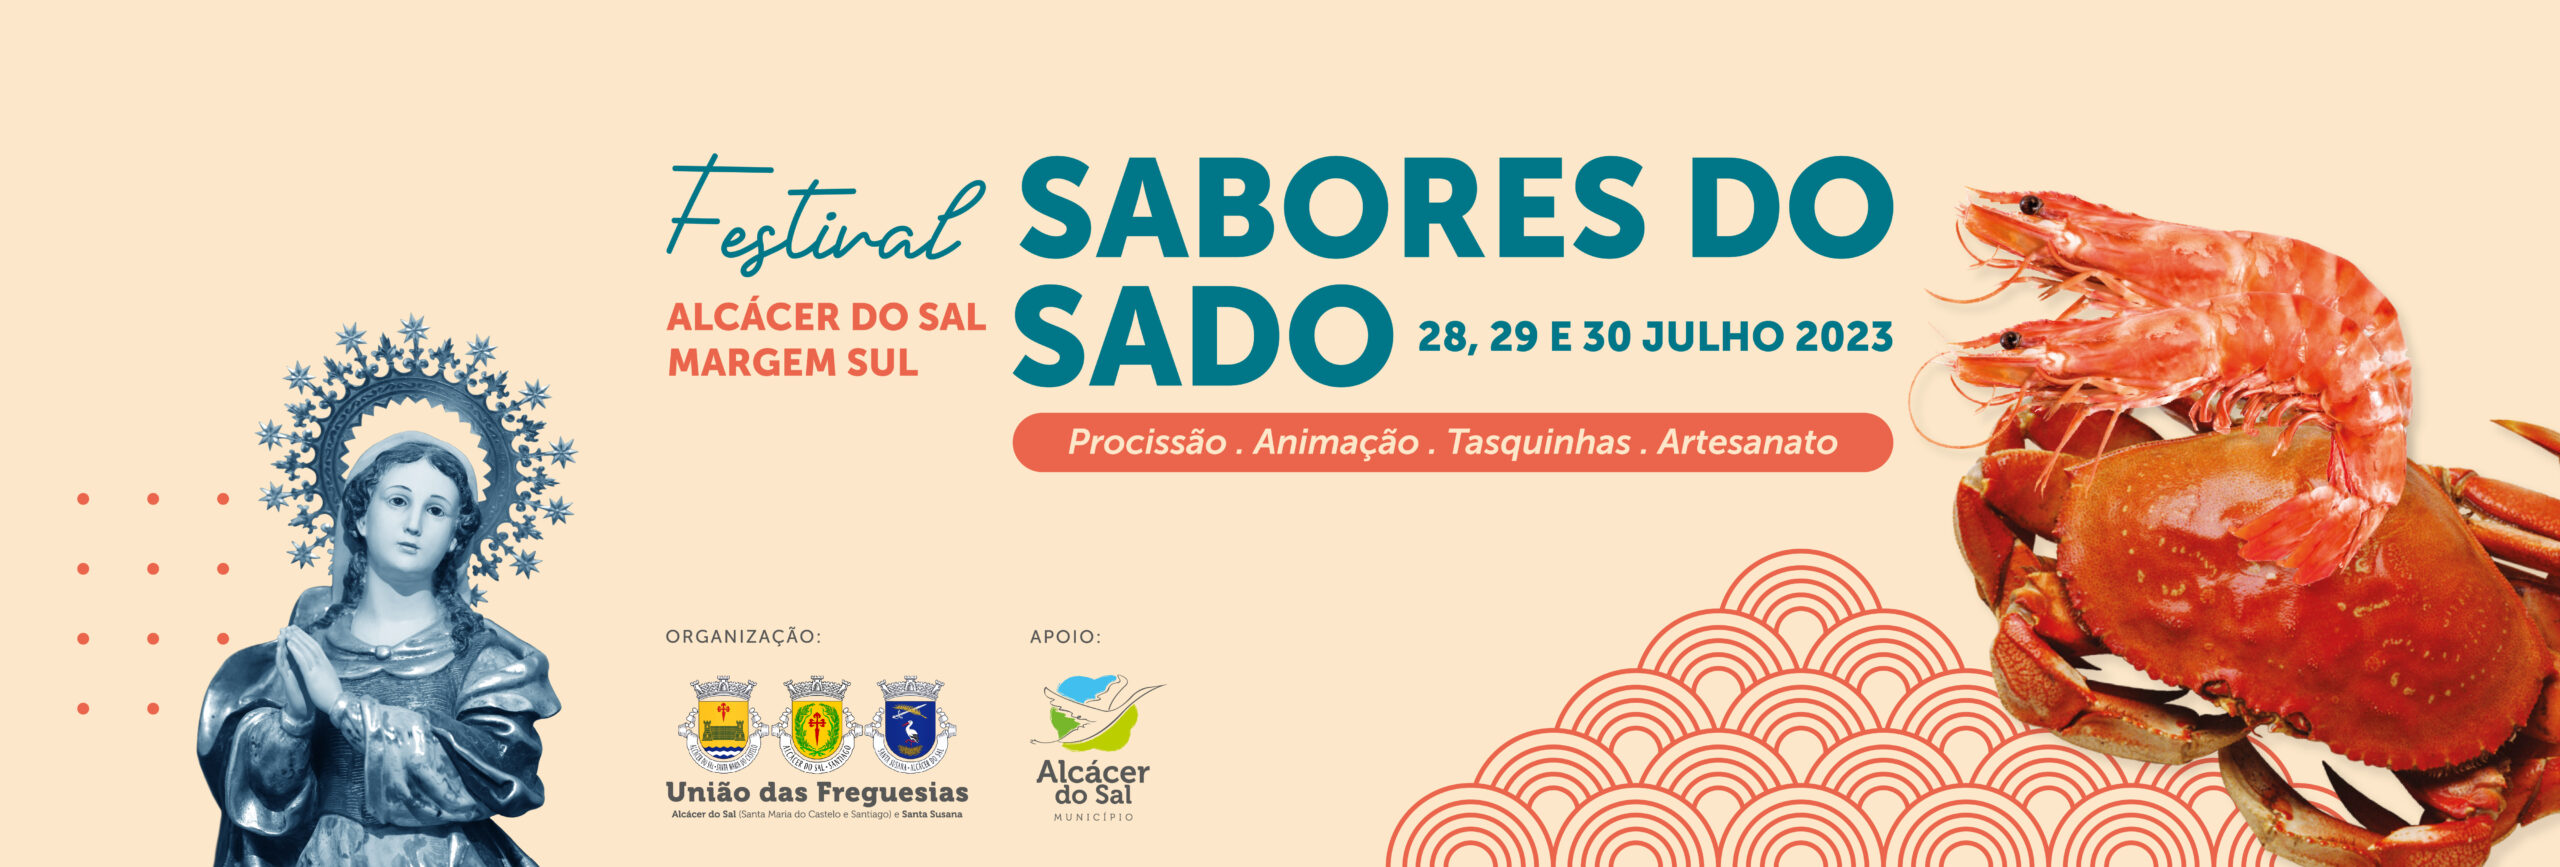 Imagem site 1920 x 650 px_Festival Sabores do Sado 2023